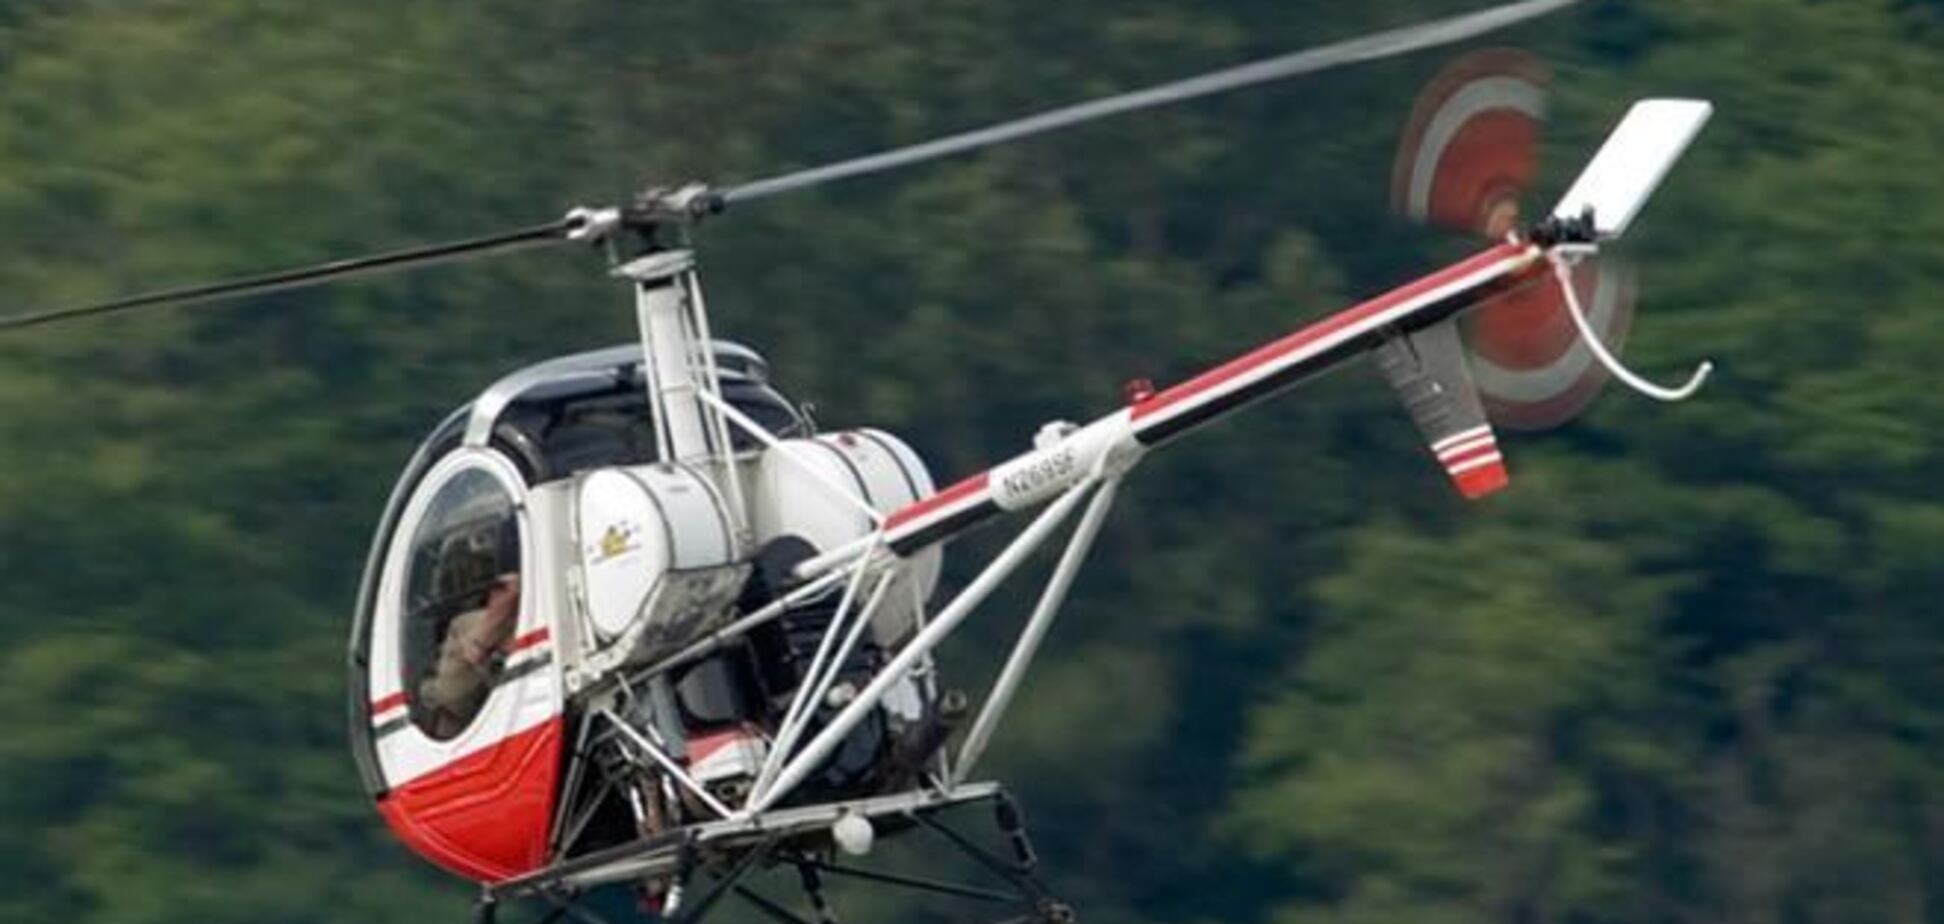 Вблизи Нью-Йорка упал вертолет: есть пострадавшие